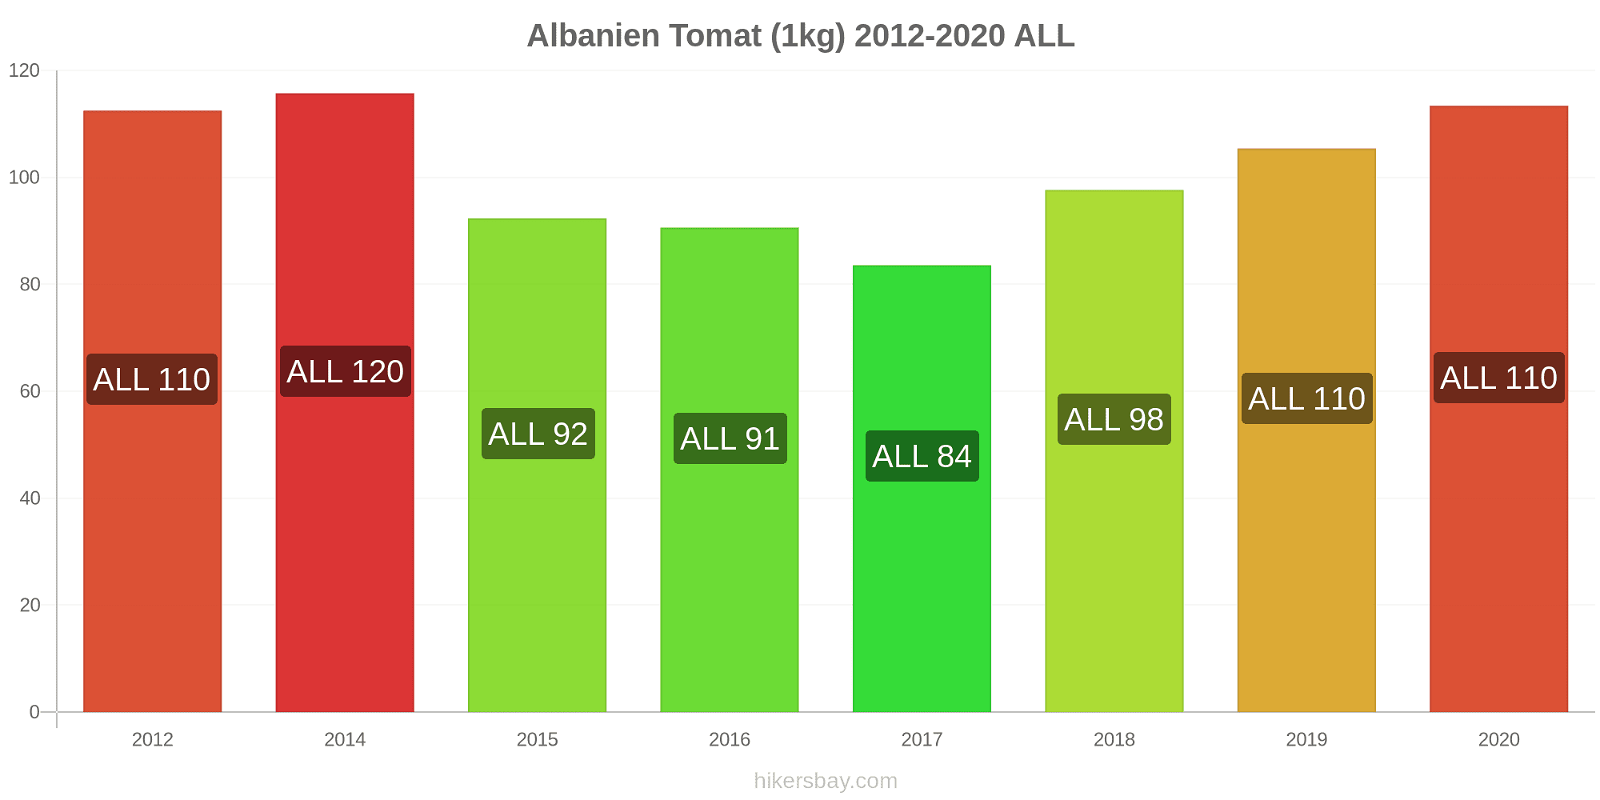 Albanien prisförändringar Tomat (1kg) hikersbay.com